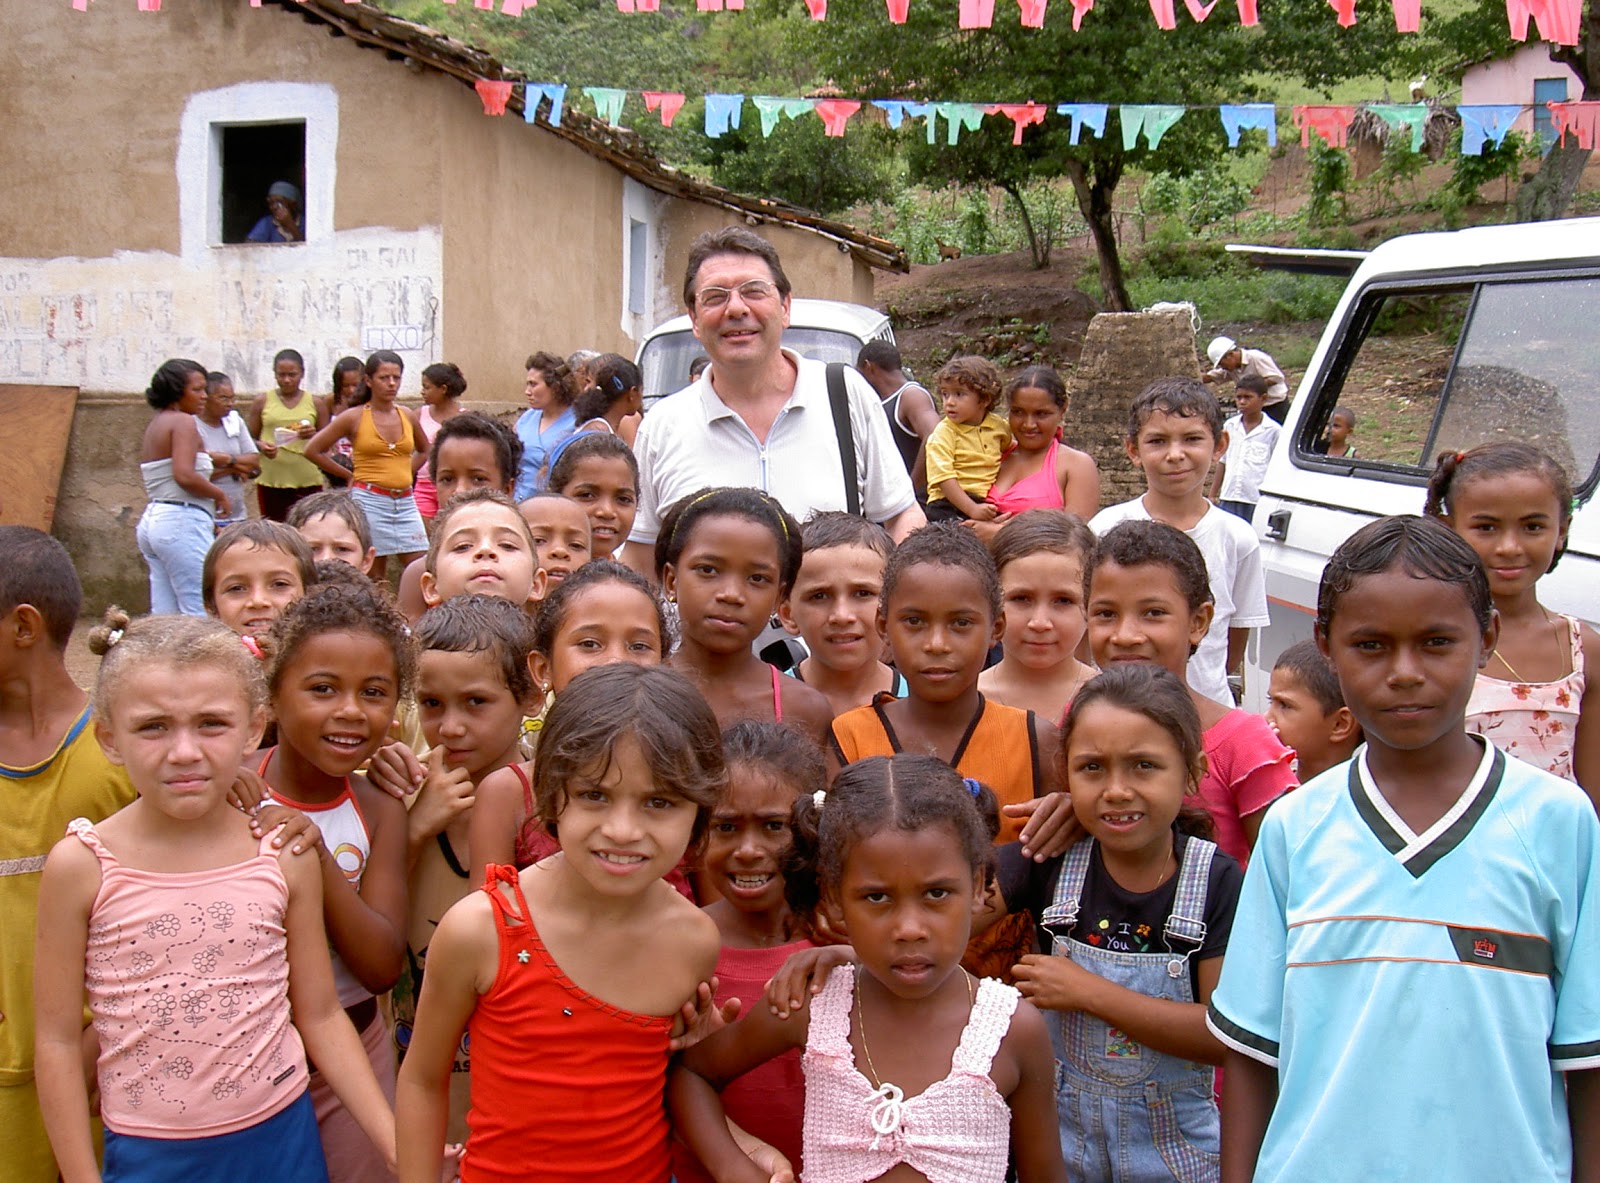 Luis "Gigetto" Zadra e la sua comunità in Brasile